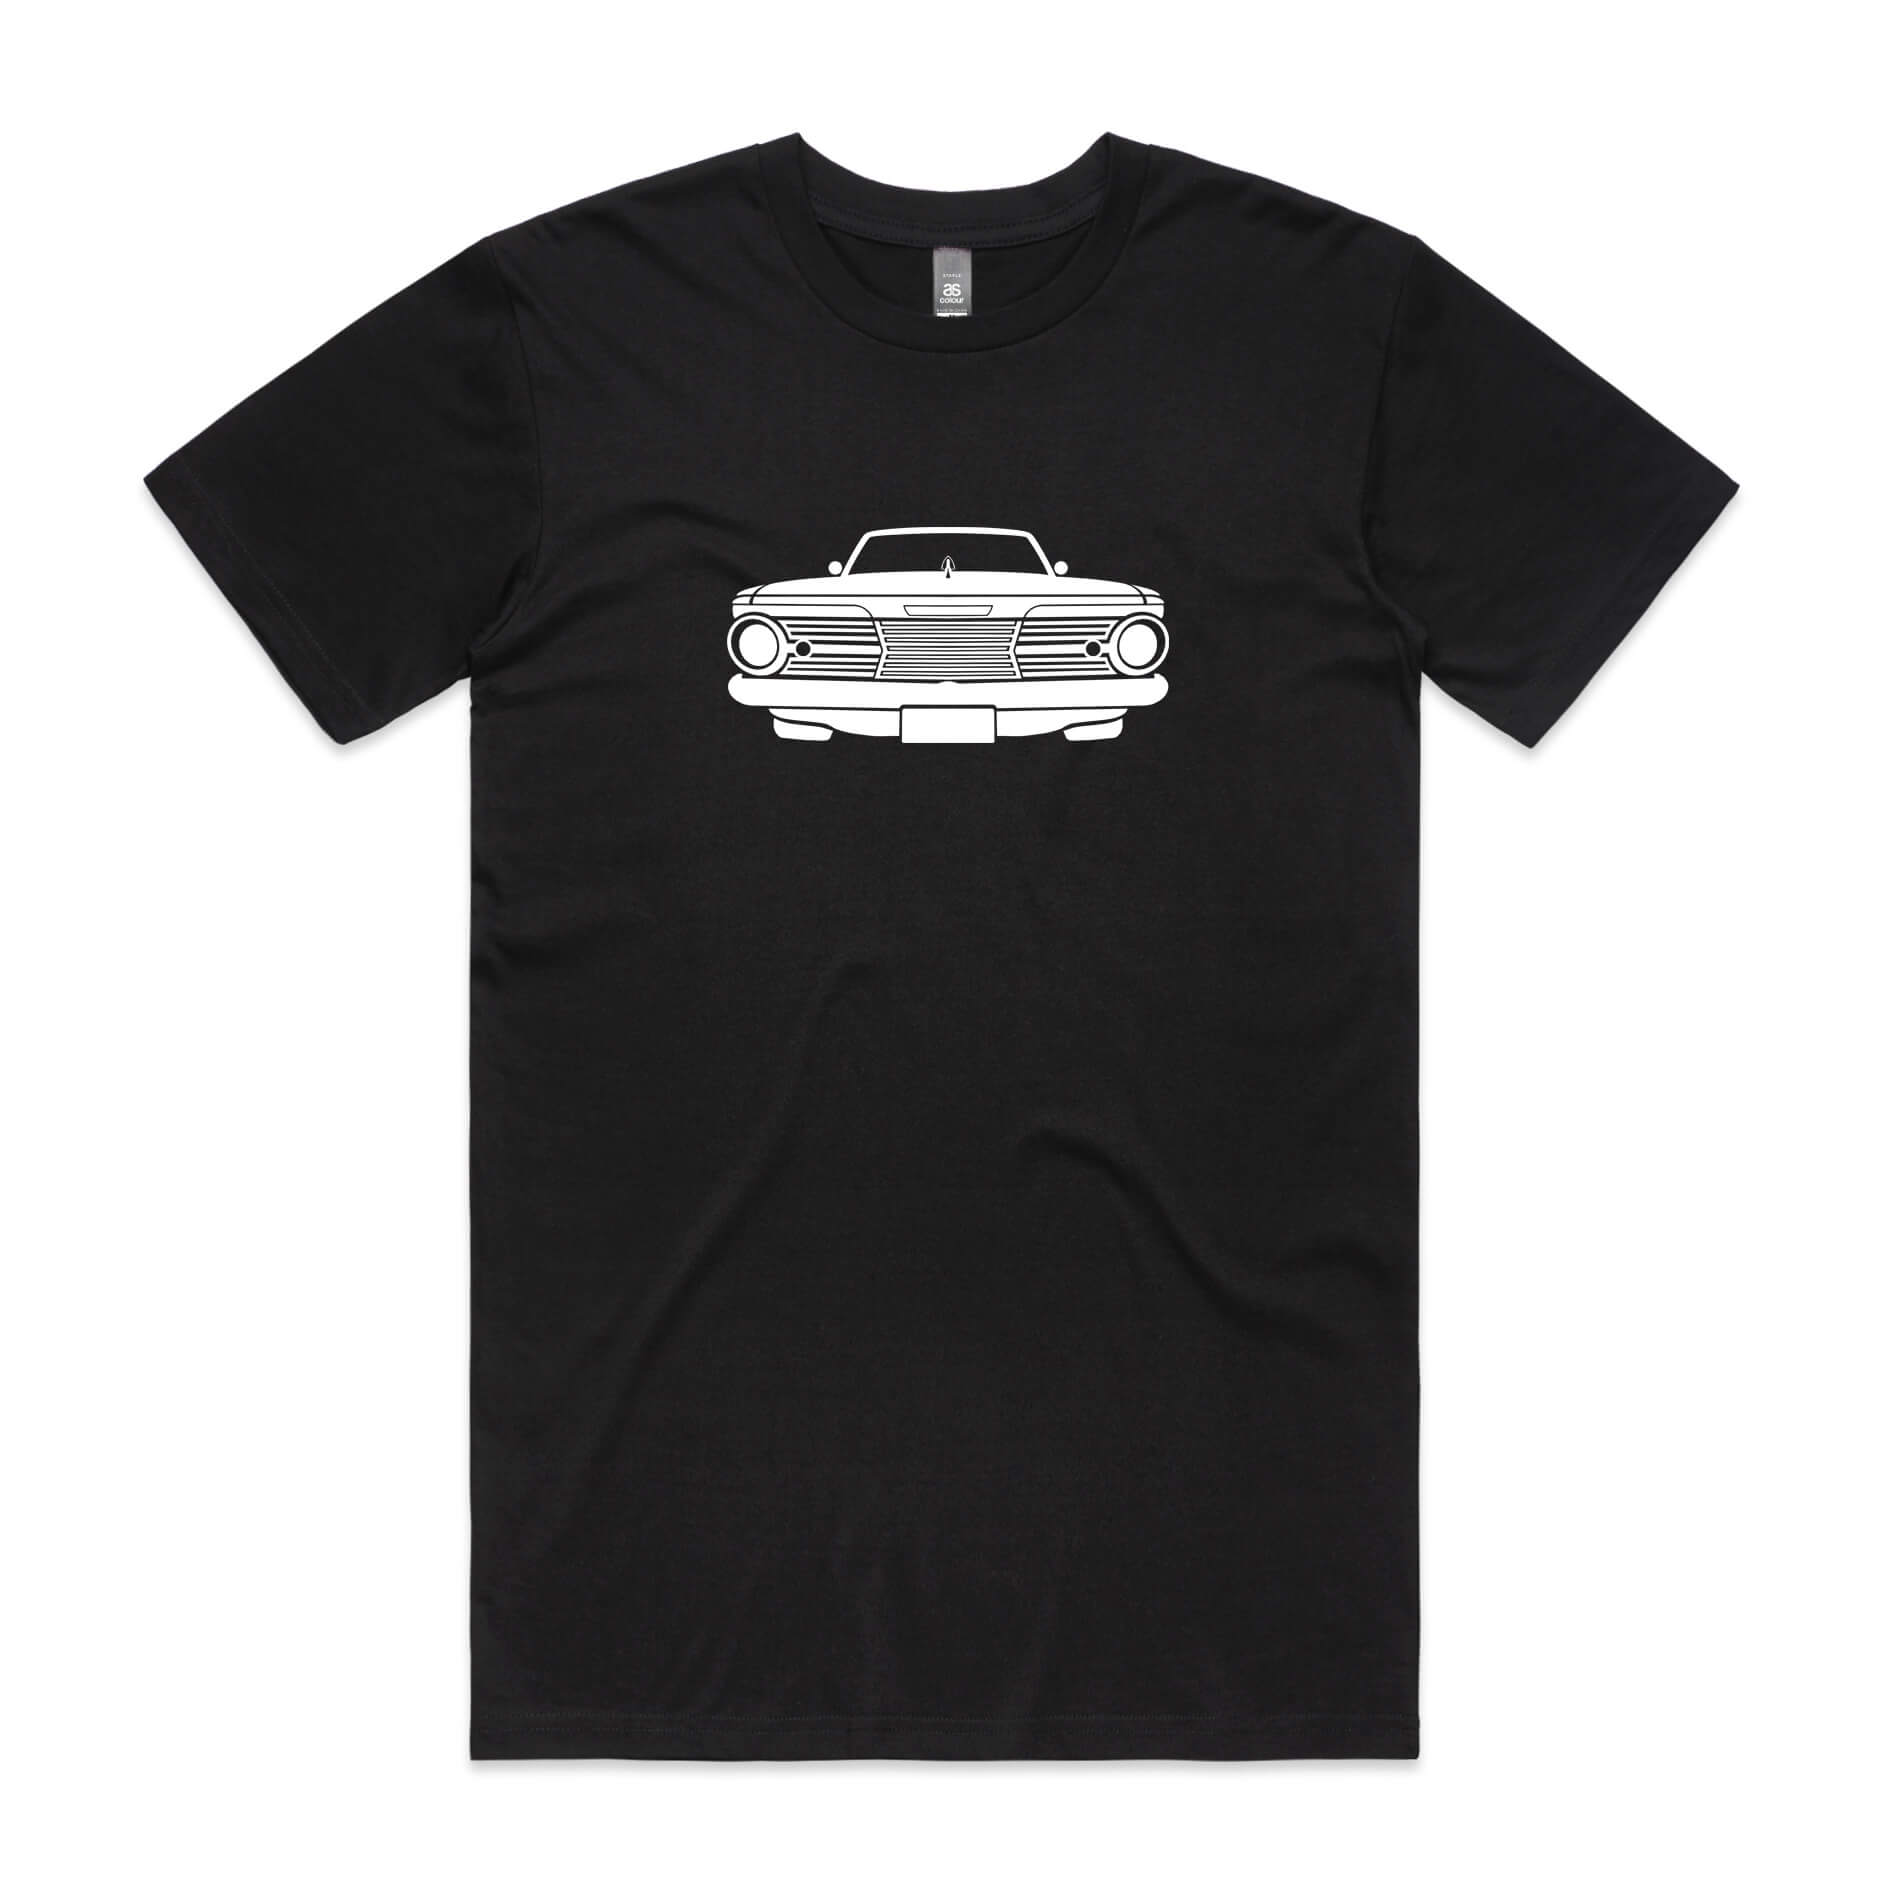 Chrysler Valiant AP6 t-shirt in black